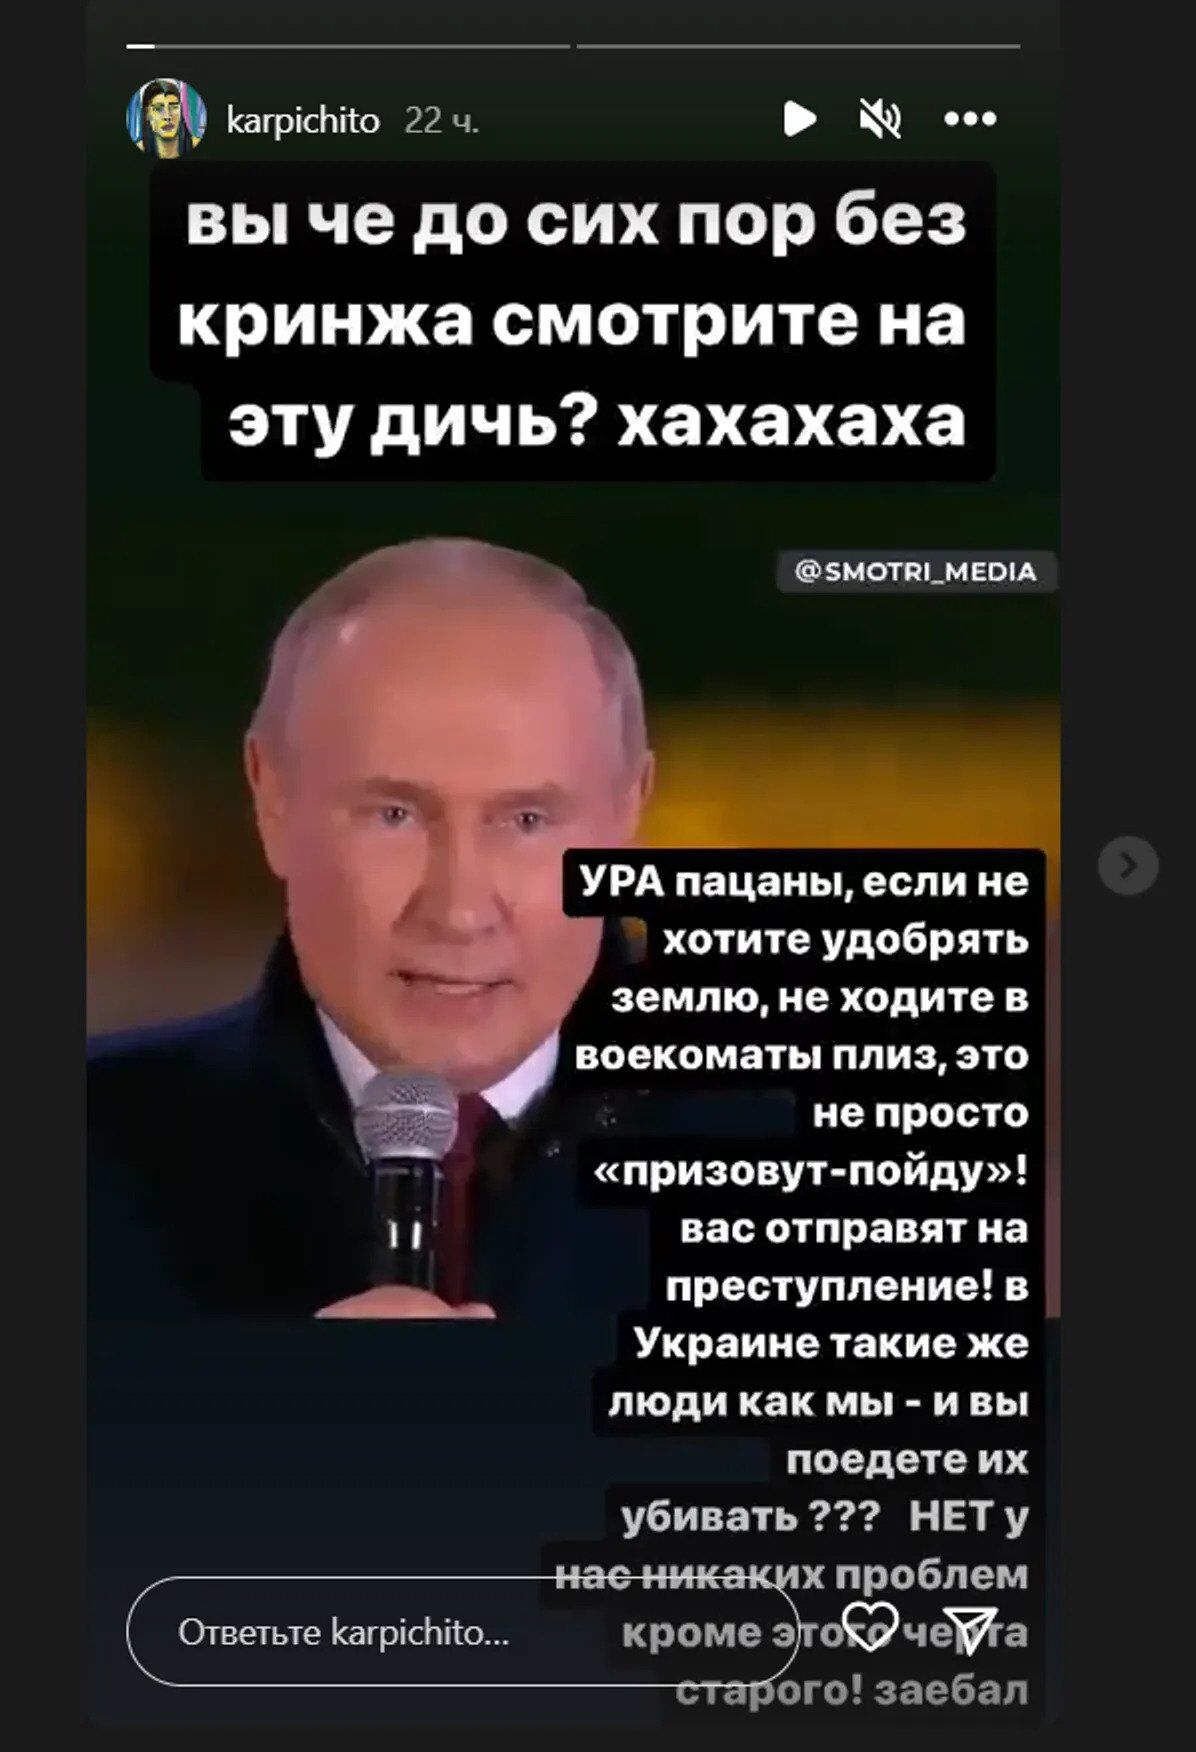 Футболістка збірної Росії назвала Путіна "проблемою, яка всіх за*бала"